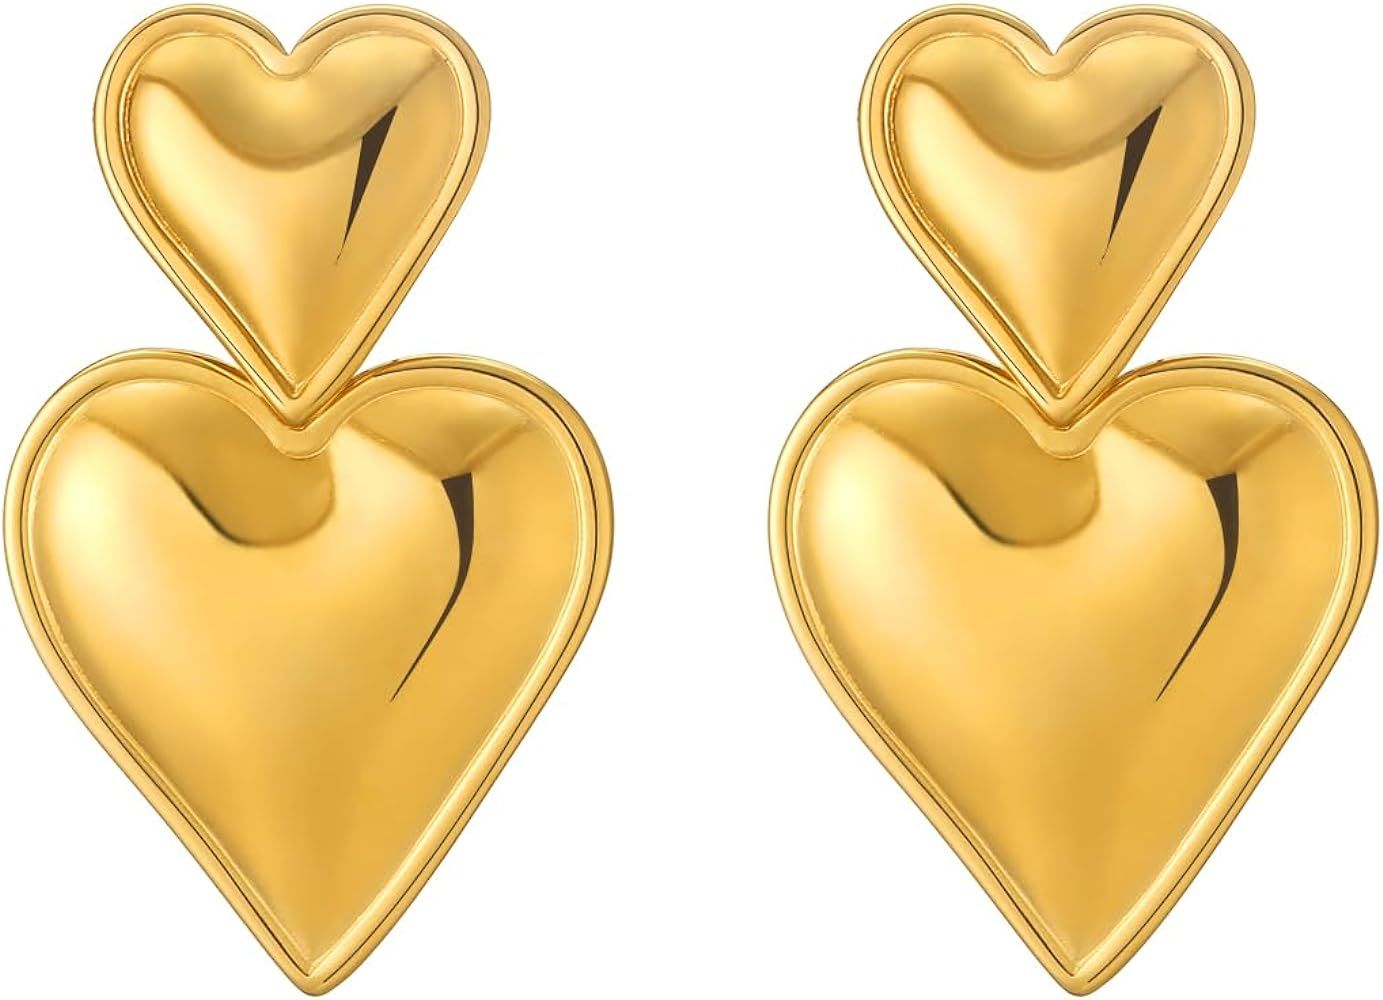 Apsvo Drop Earrings Spiral Chunky Gold Hoop Earrings Lightweight Dangle Earrings Teardrop Trendy ... | Amazon (US)